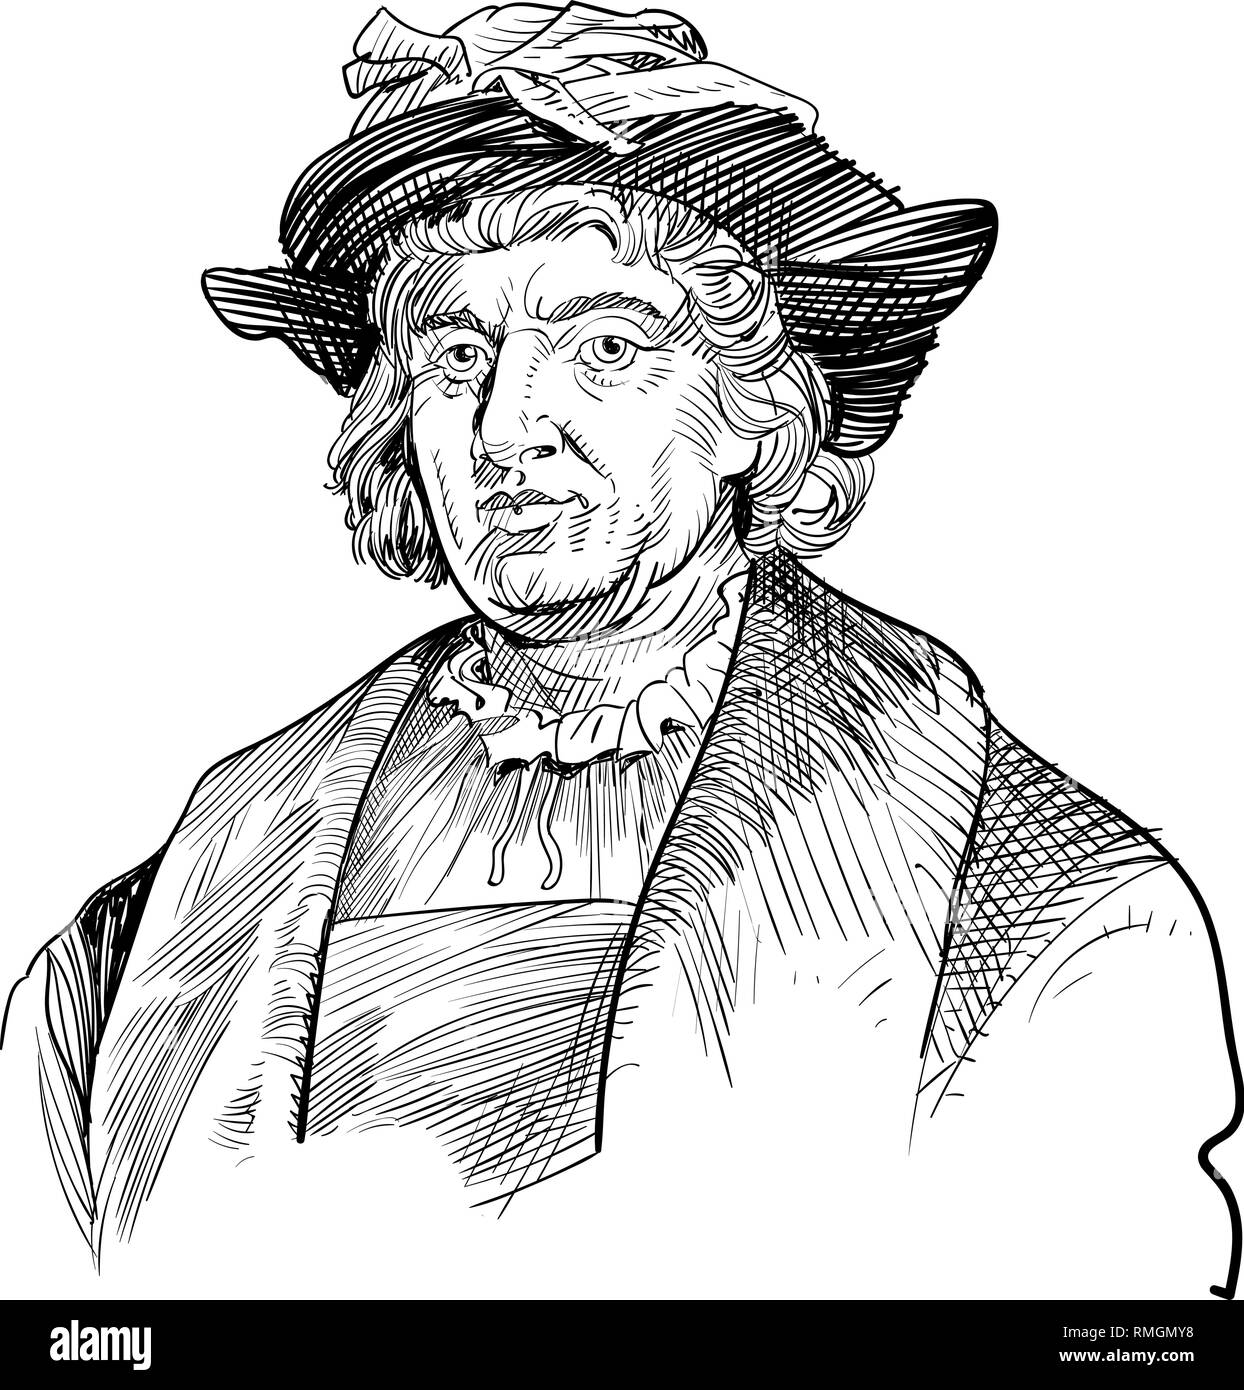 Retrato de Cristóbal Colón en la línea art illustration. Él era un explorador italiano, colonizador, navegante y descubridor de América. Ilustración del Vector